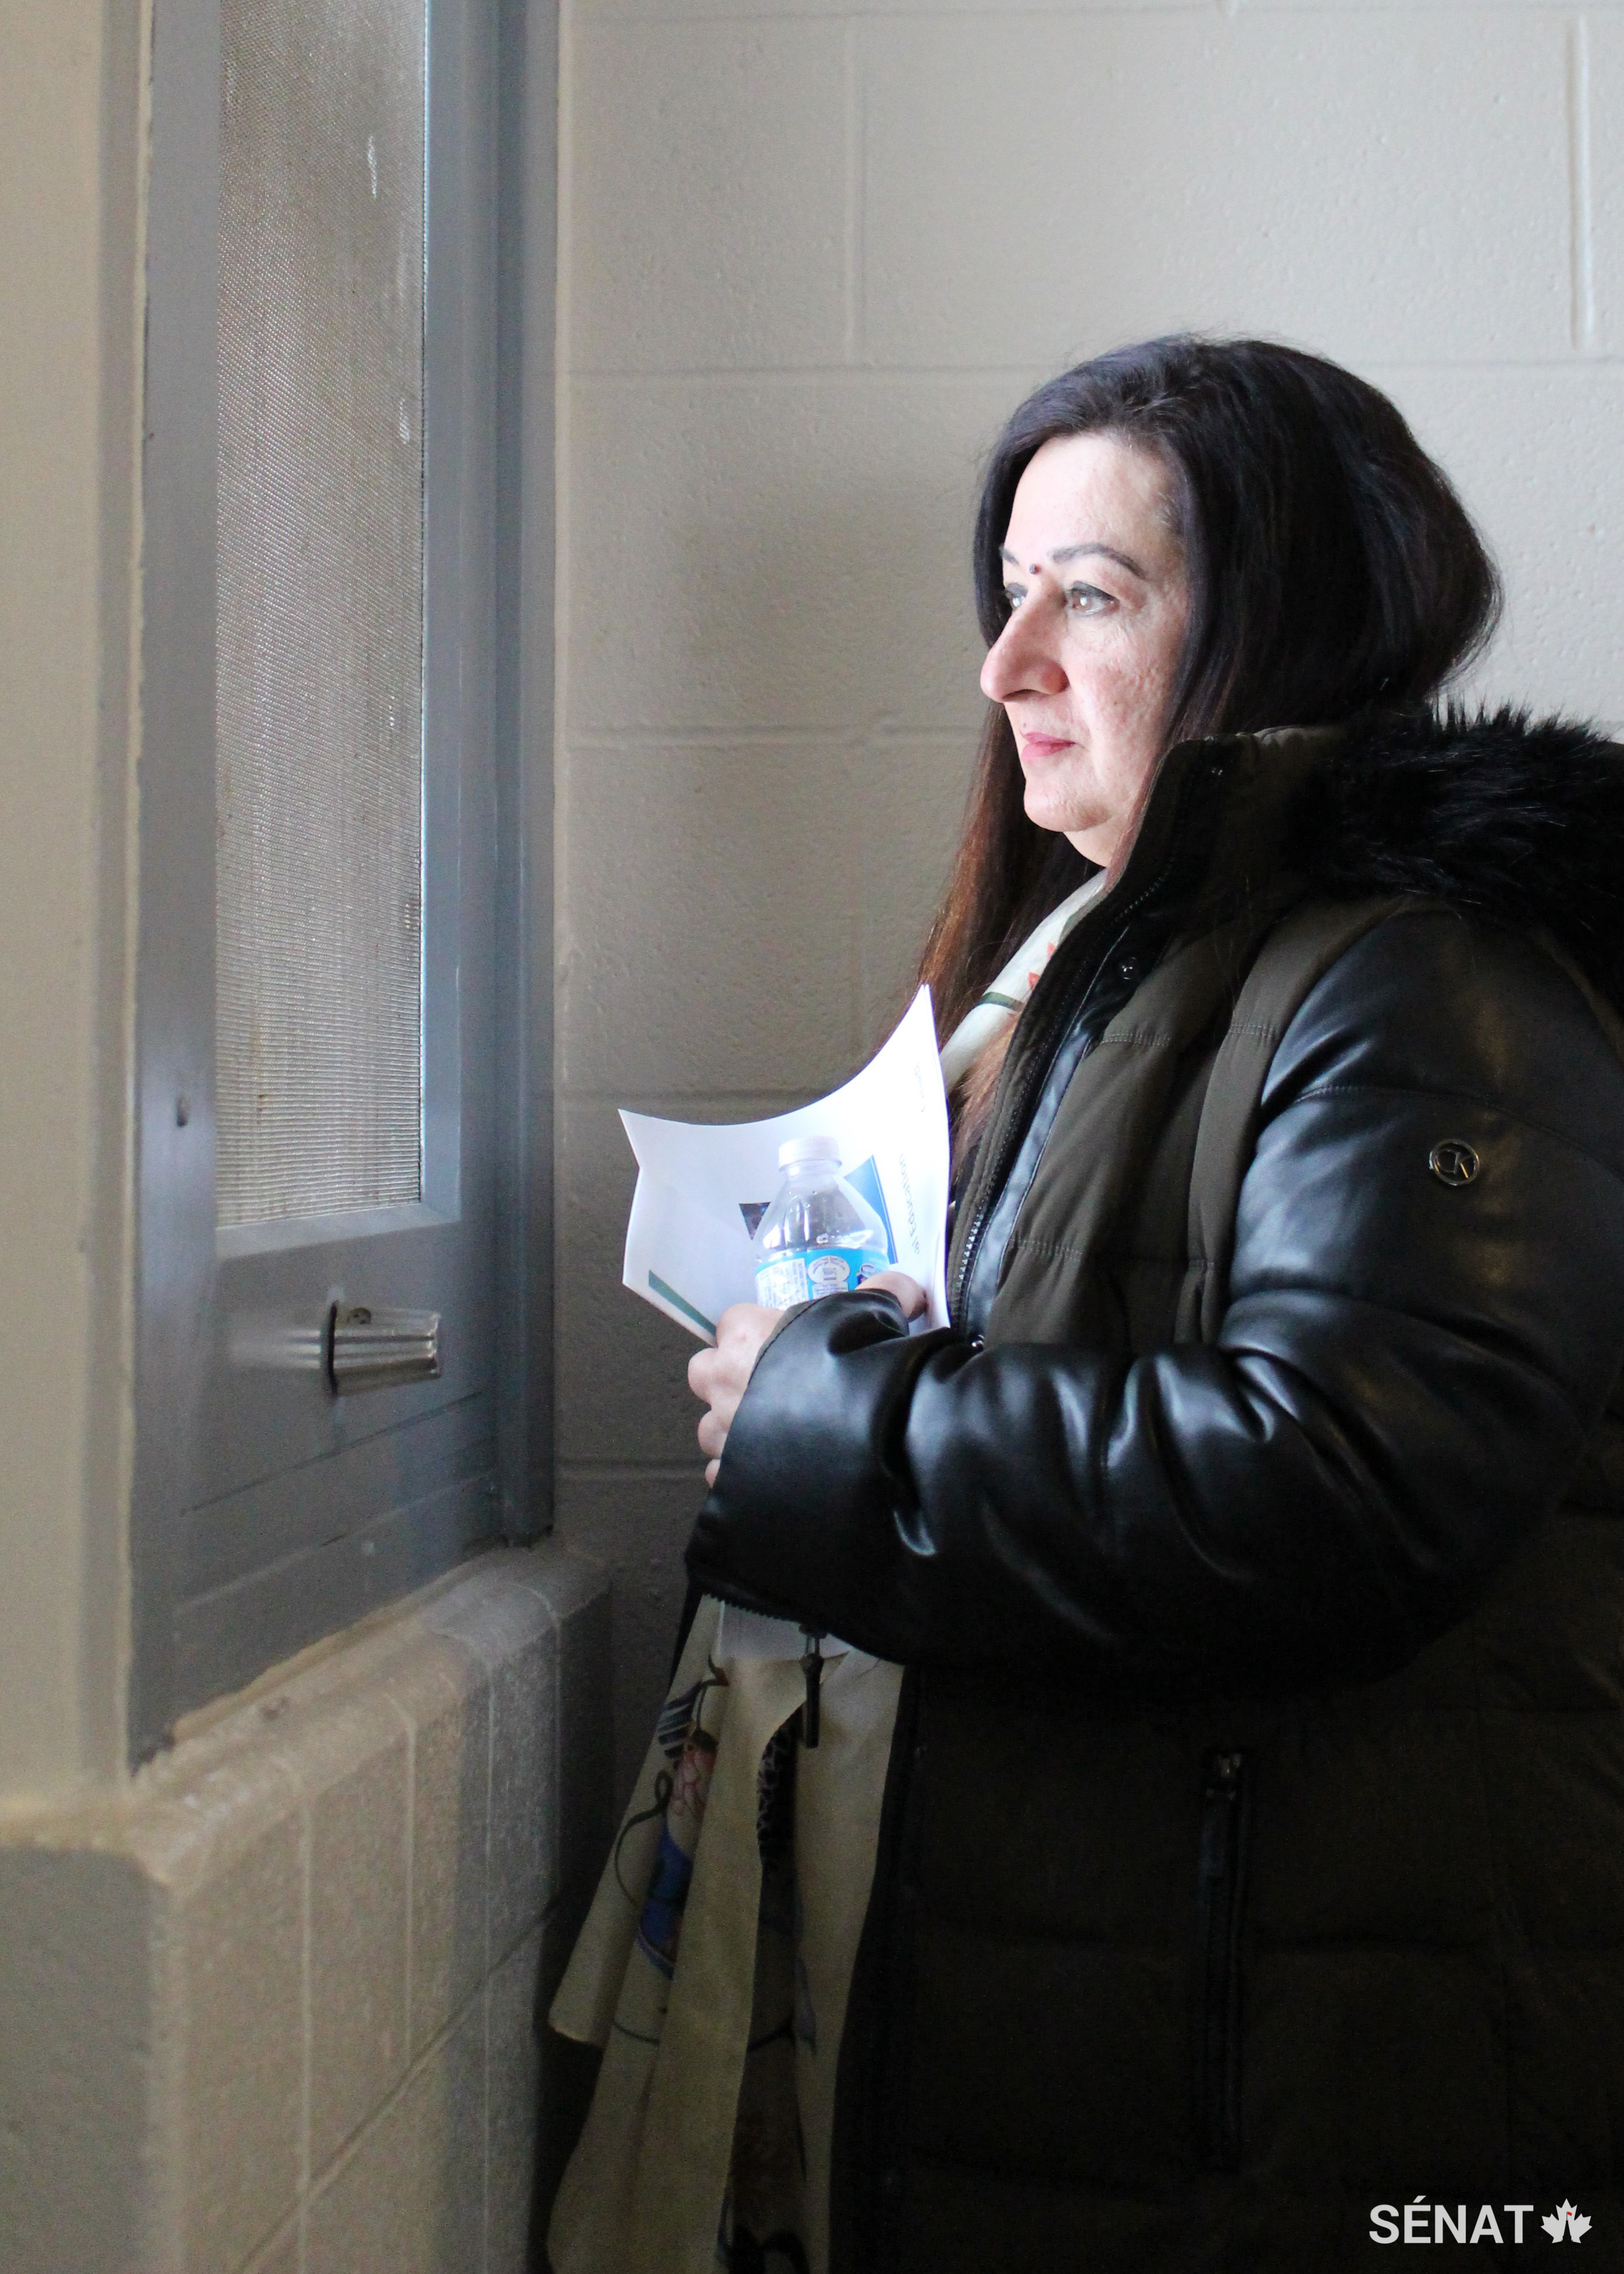 La sénatrice Salma Ataullahjan, vice-présidente du comité, regarde par la seule fenêtre donnant sur le monde extérieur dans une cellule du secteur d'isolement de la prison pour femmes Grand Valley, à Kitchener (Ontario).